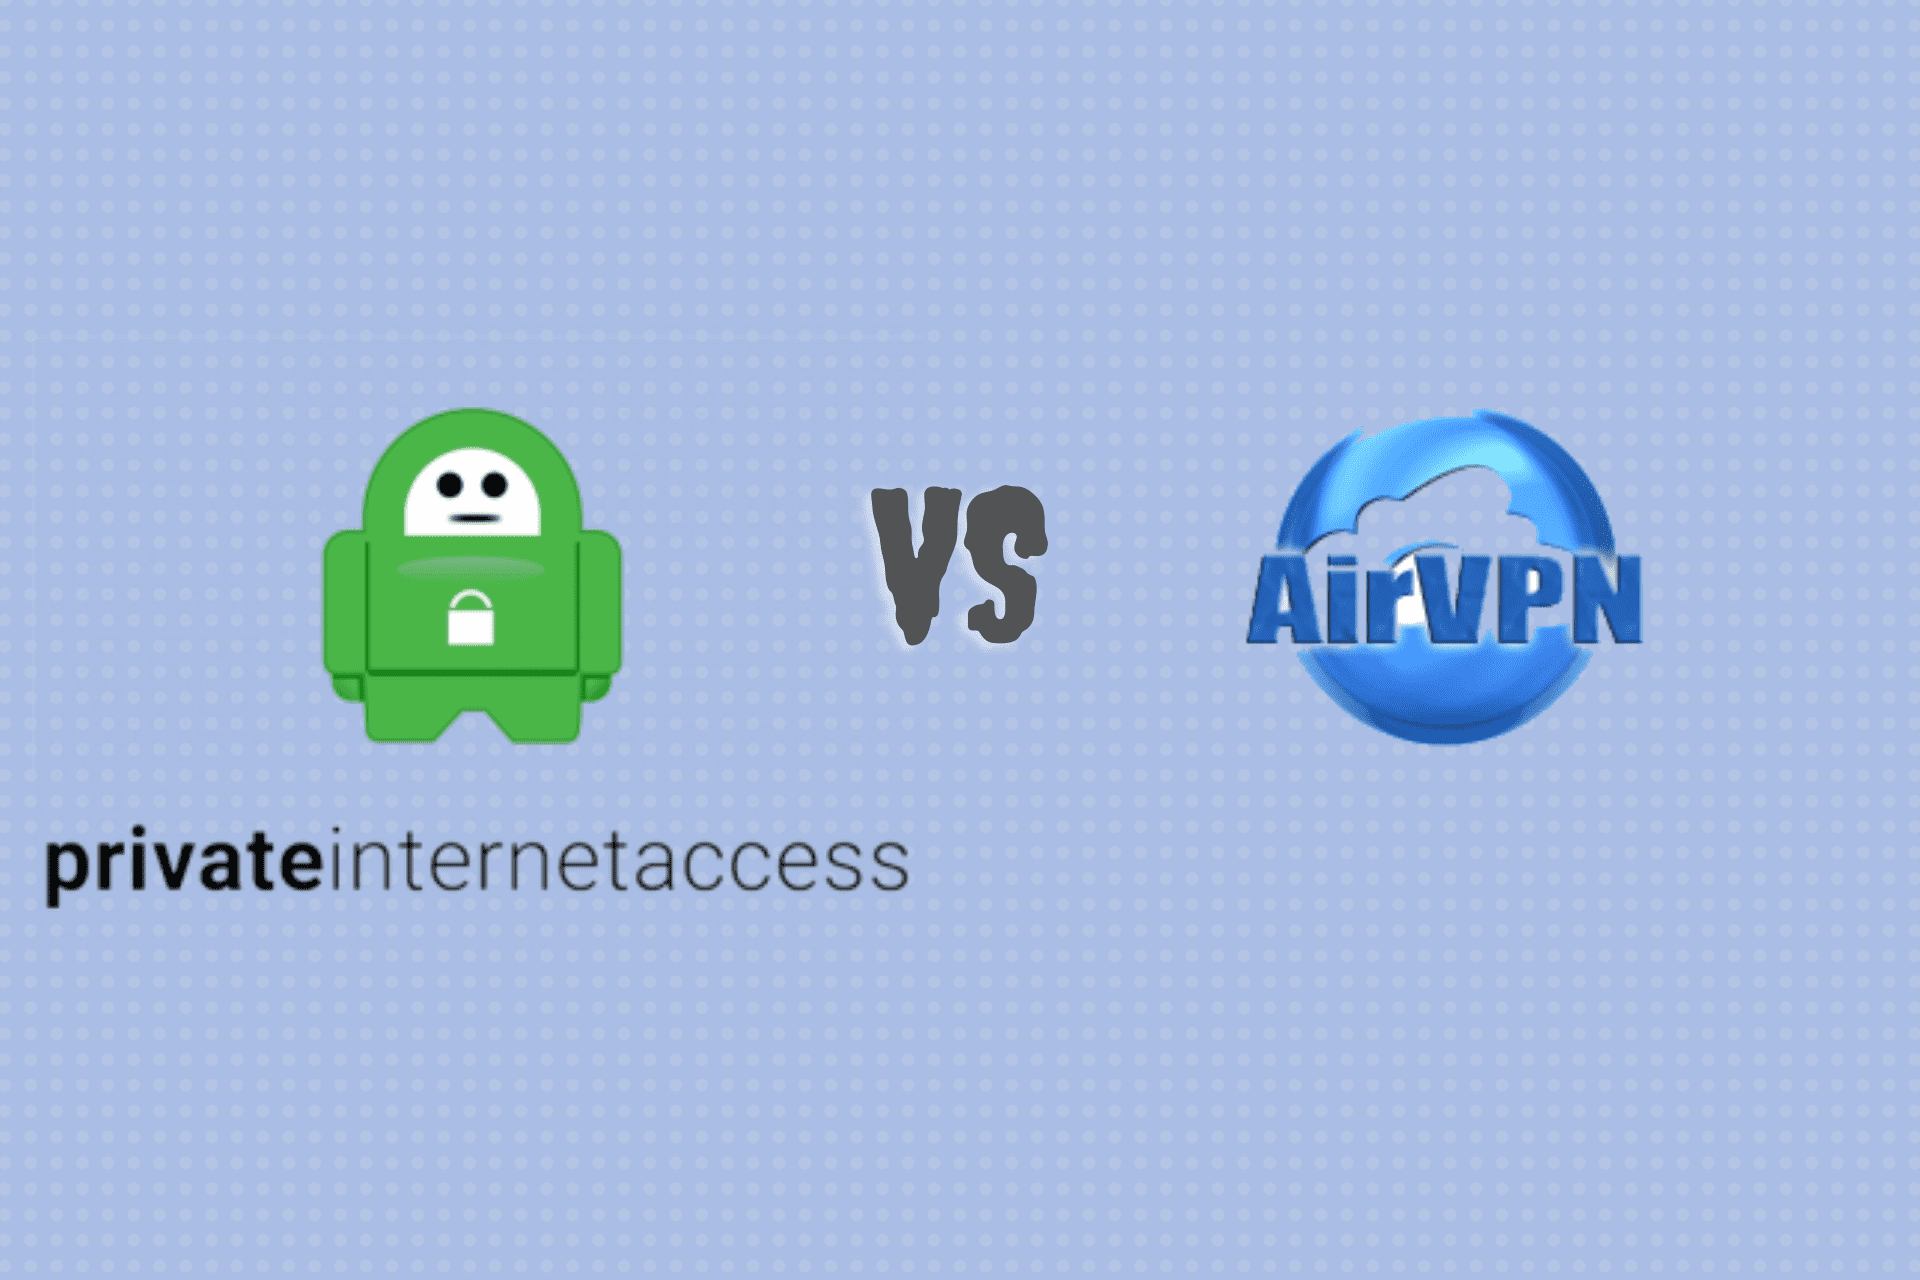 Private Internet Access (PIA) vs AirVPN